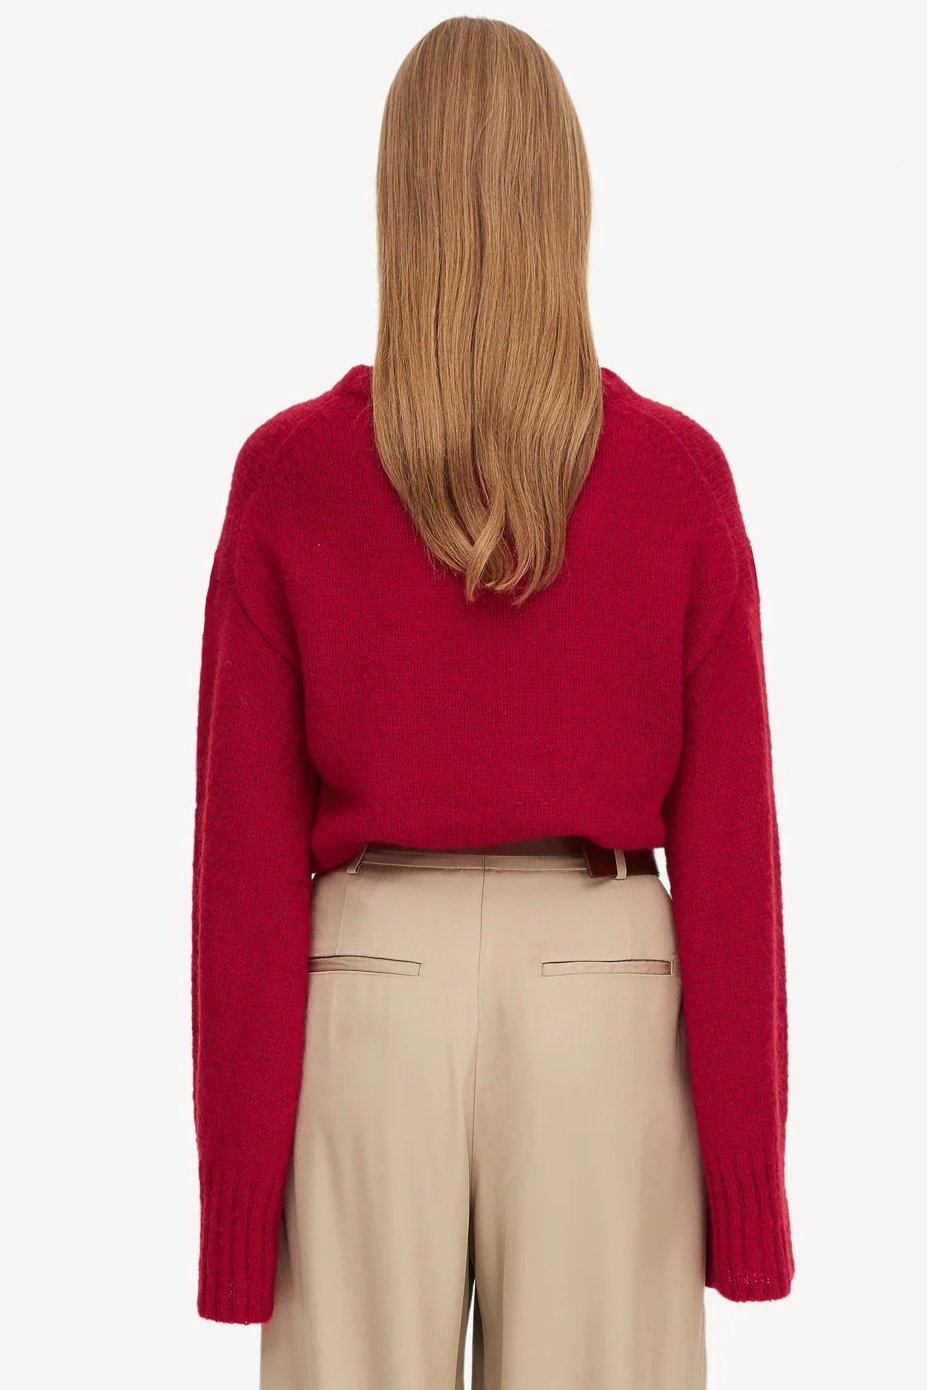 Sweater | By Malene Birger Cierra strik, jester red